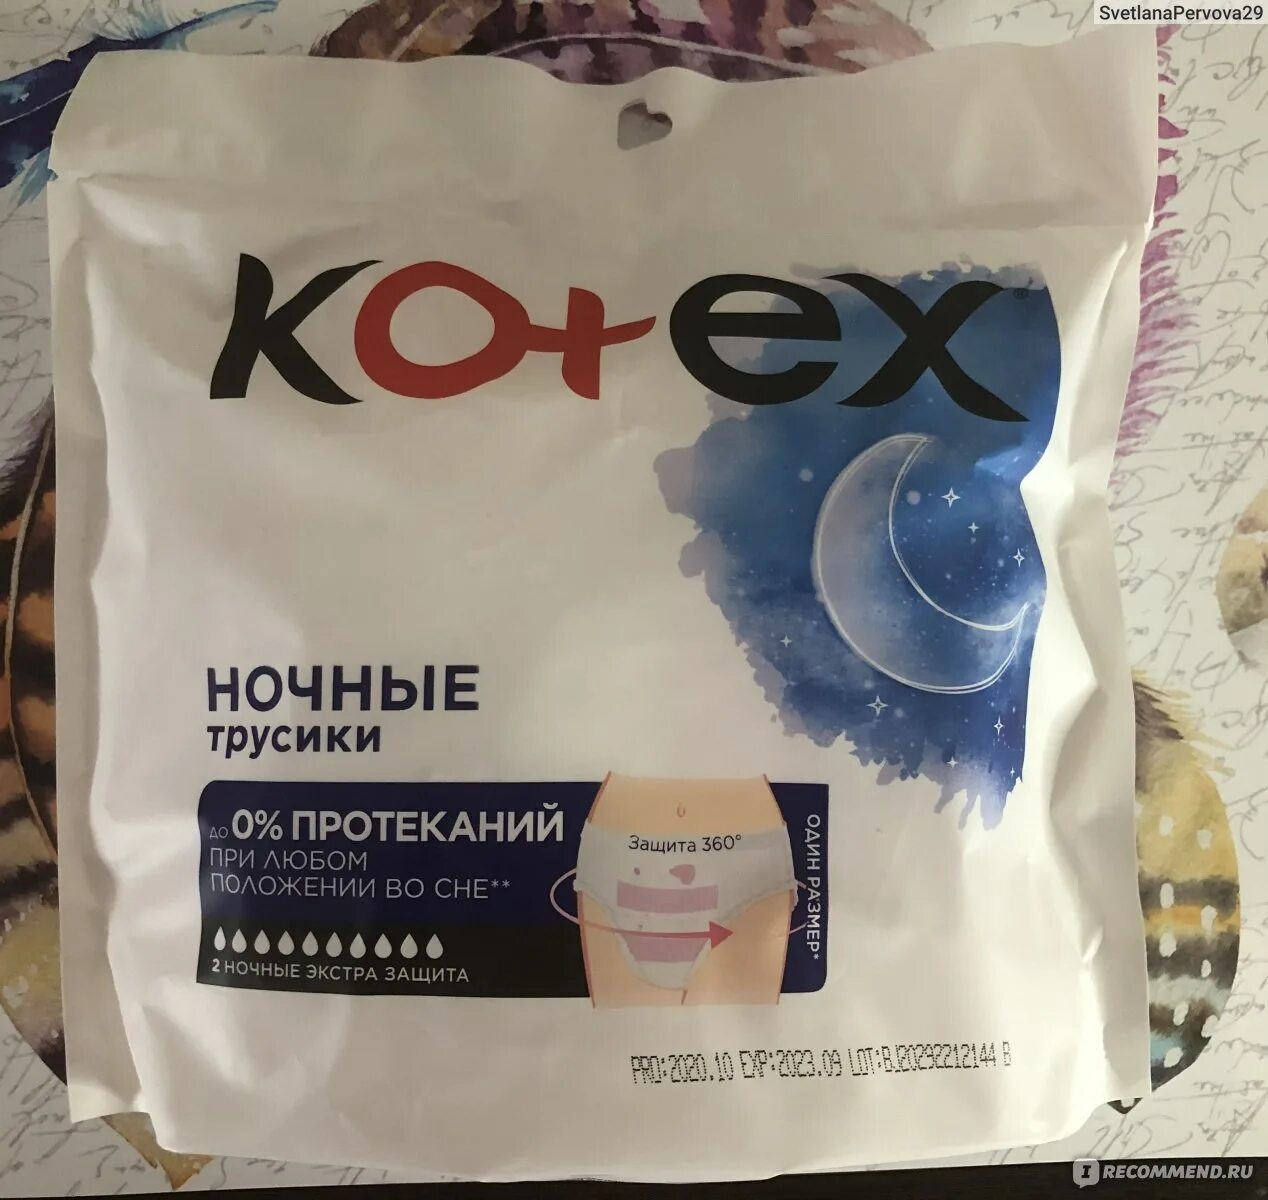 Kotex ночные. Kotex прокладки ночные трусы. Подгузники Котекс ночные. Одноразовые трусы Kotex.